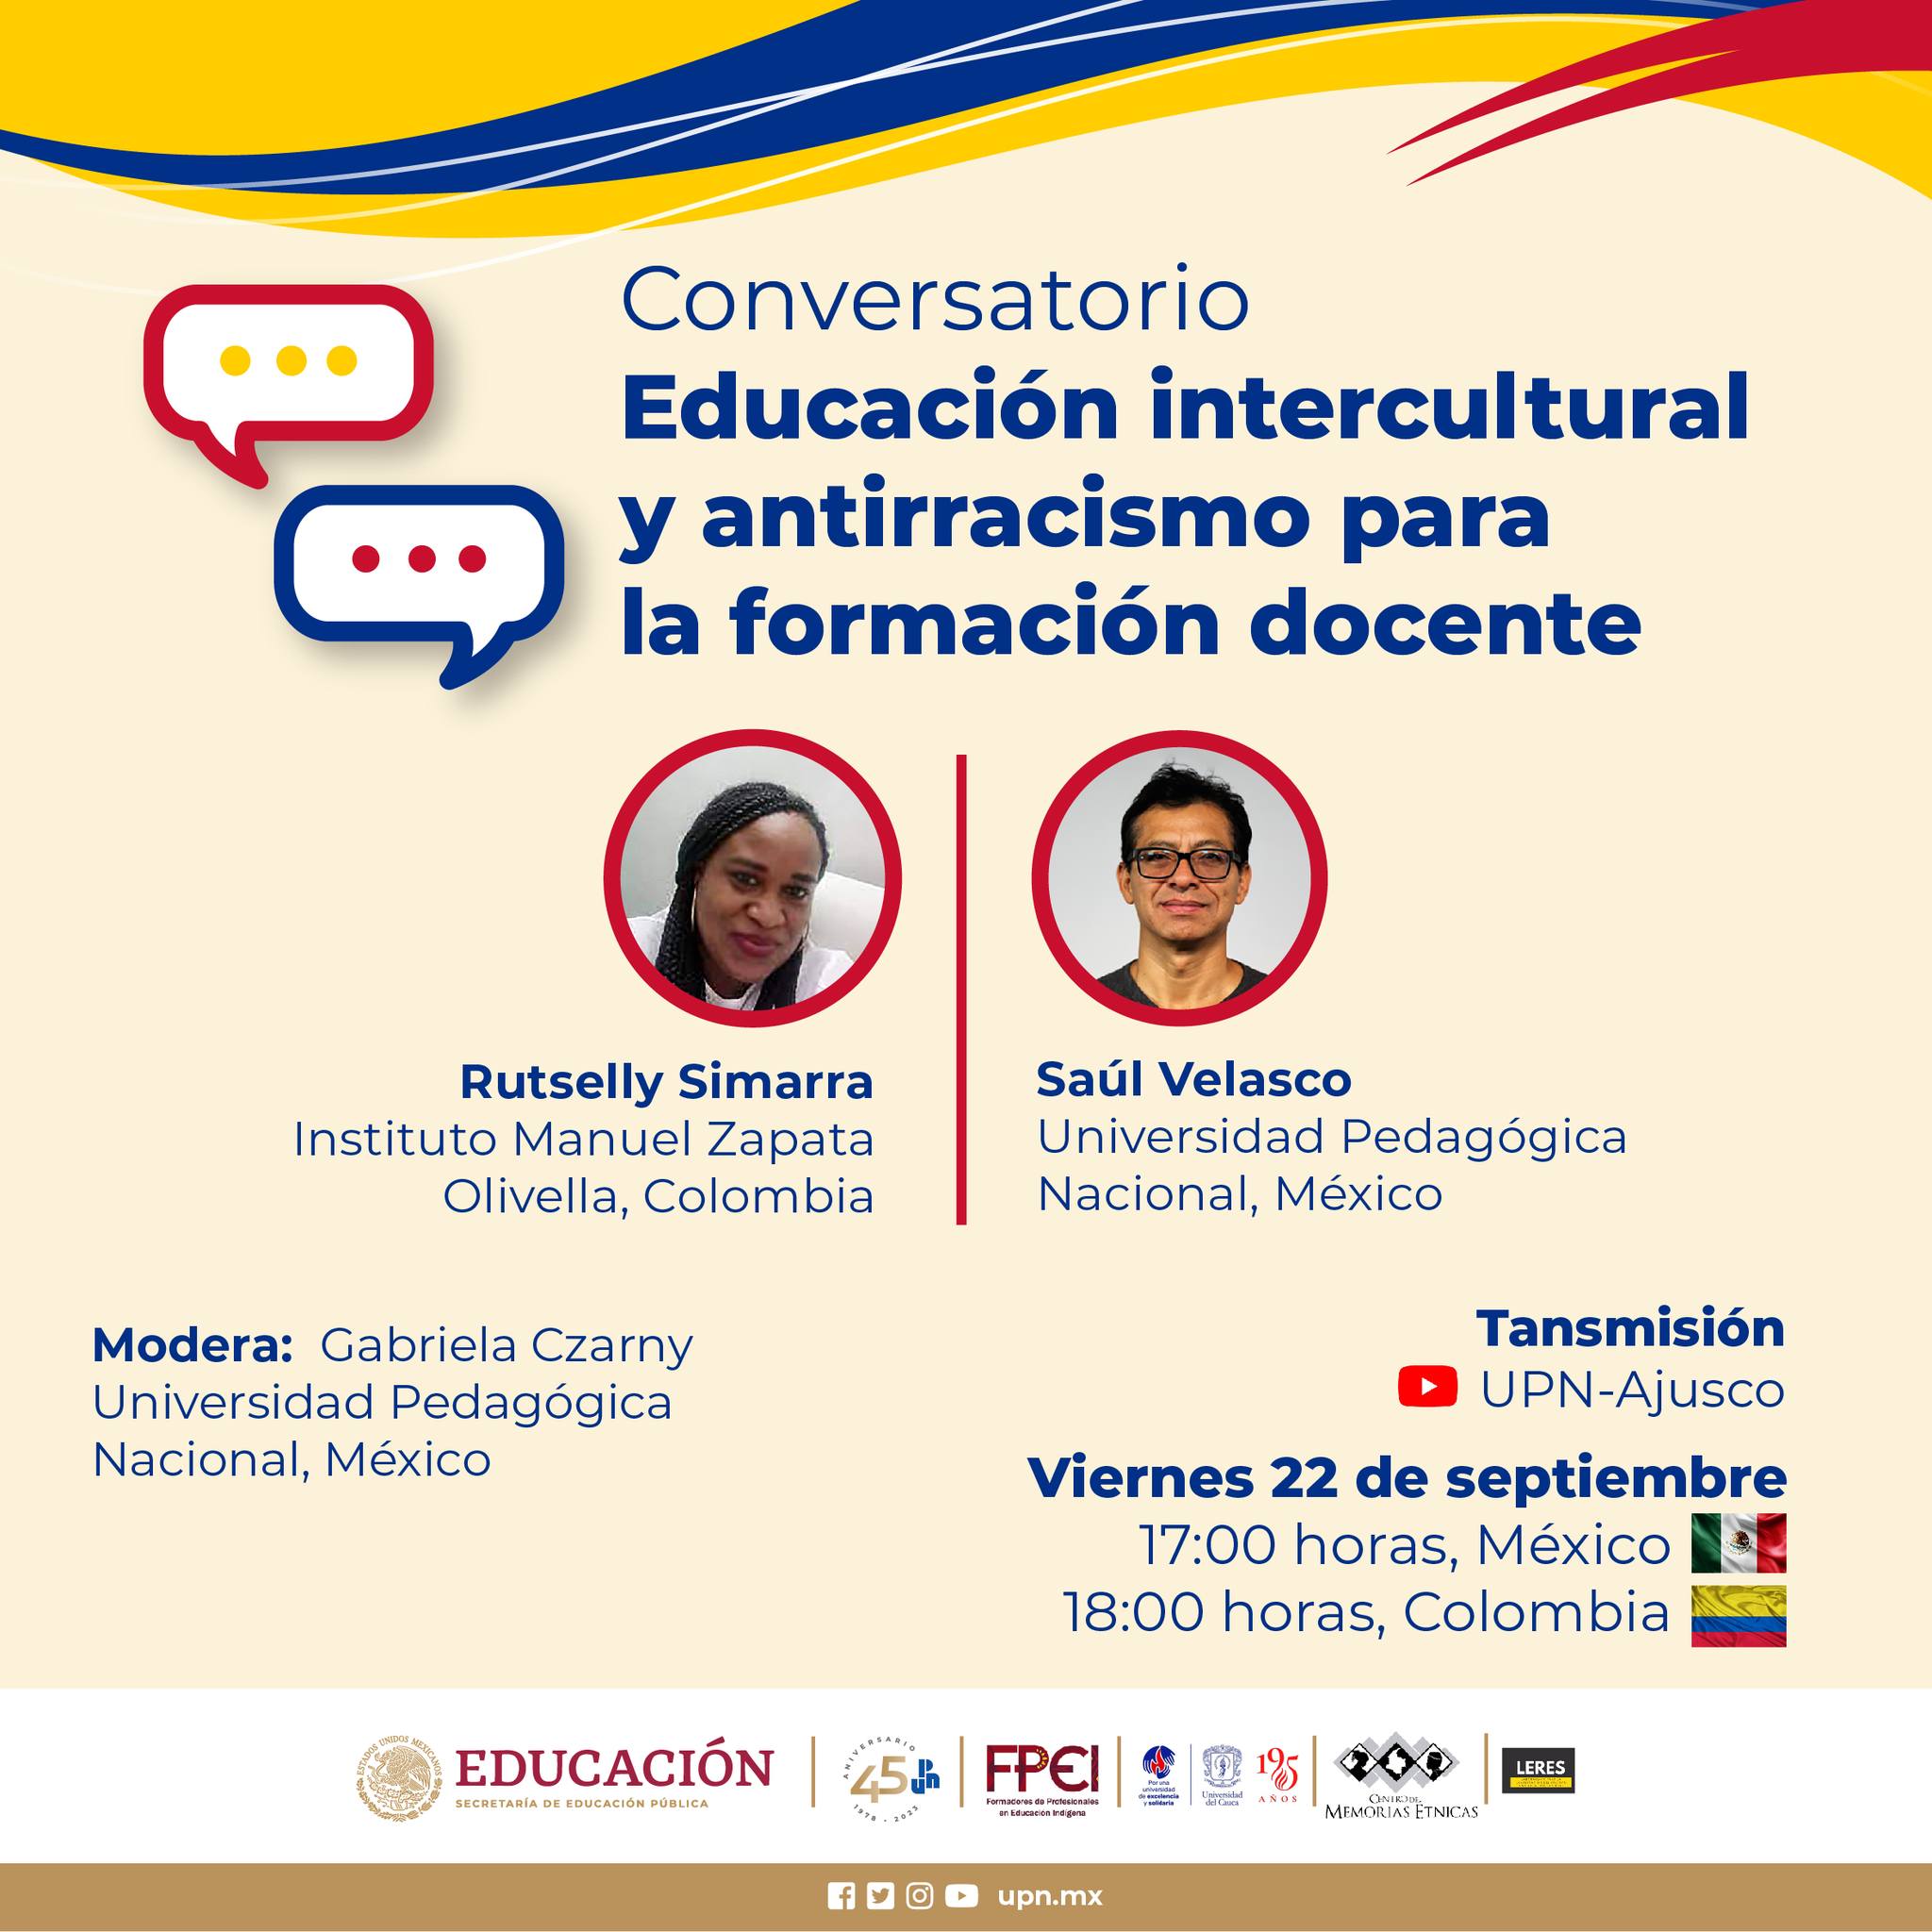 Educación intercultural y antirracismo para la formación docente